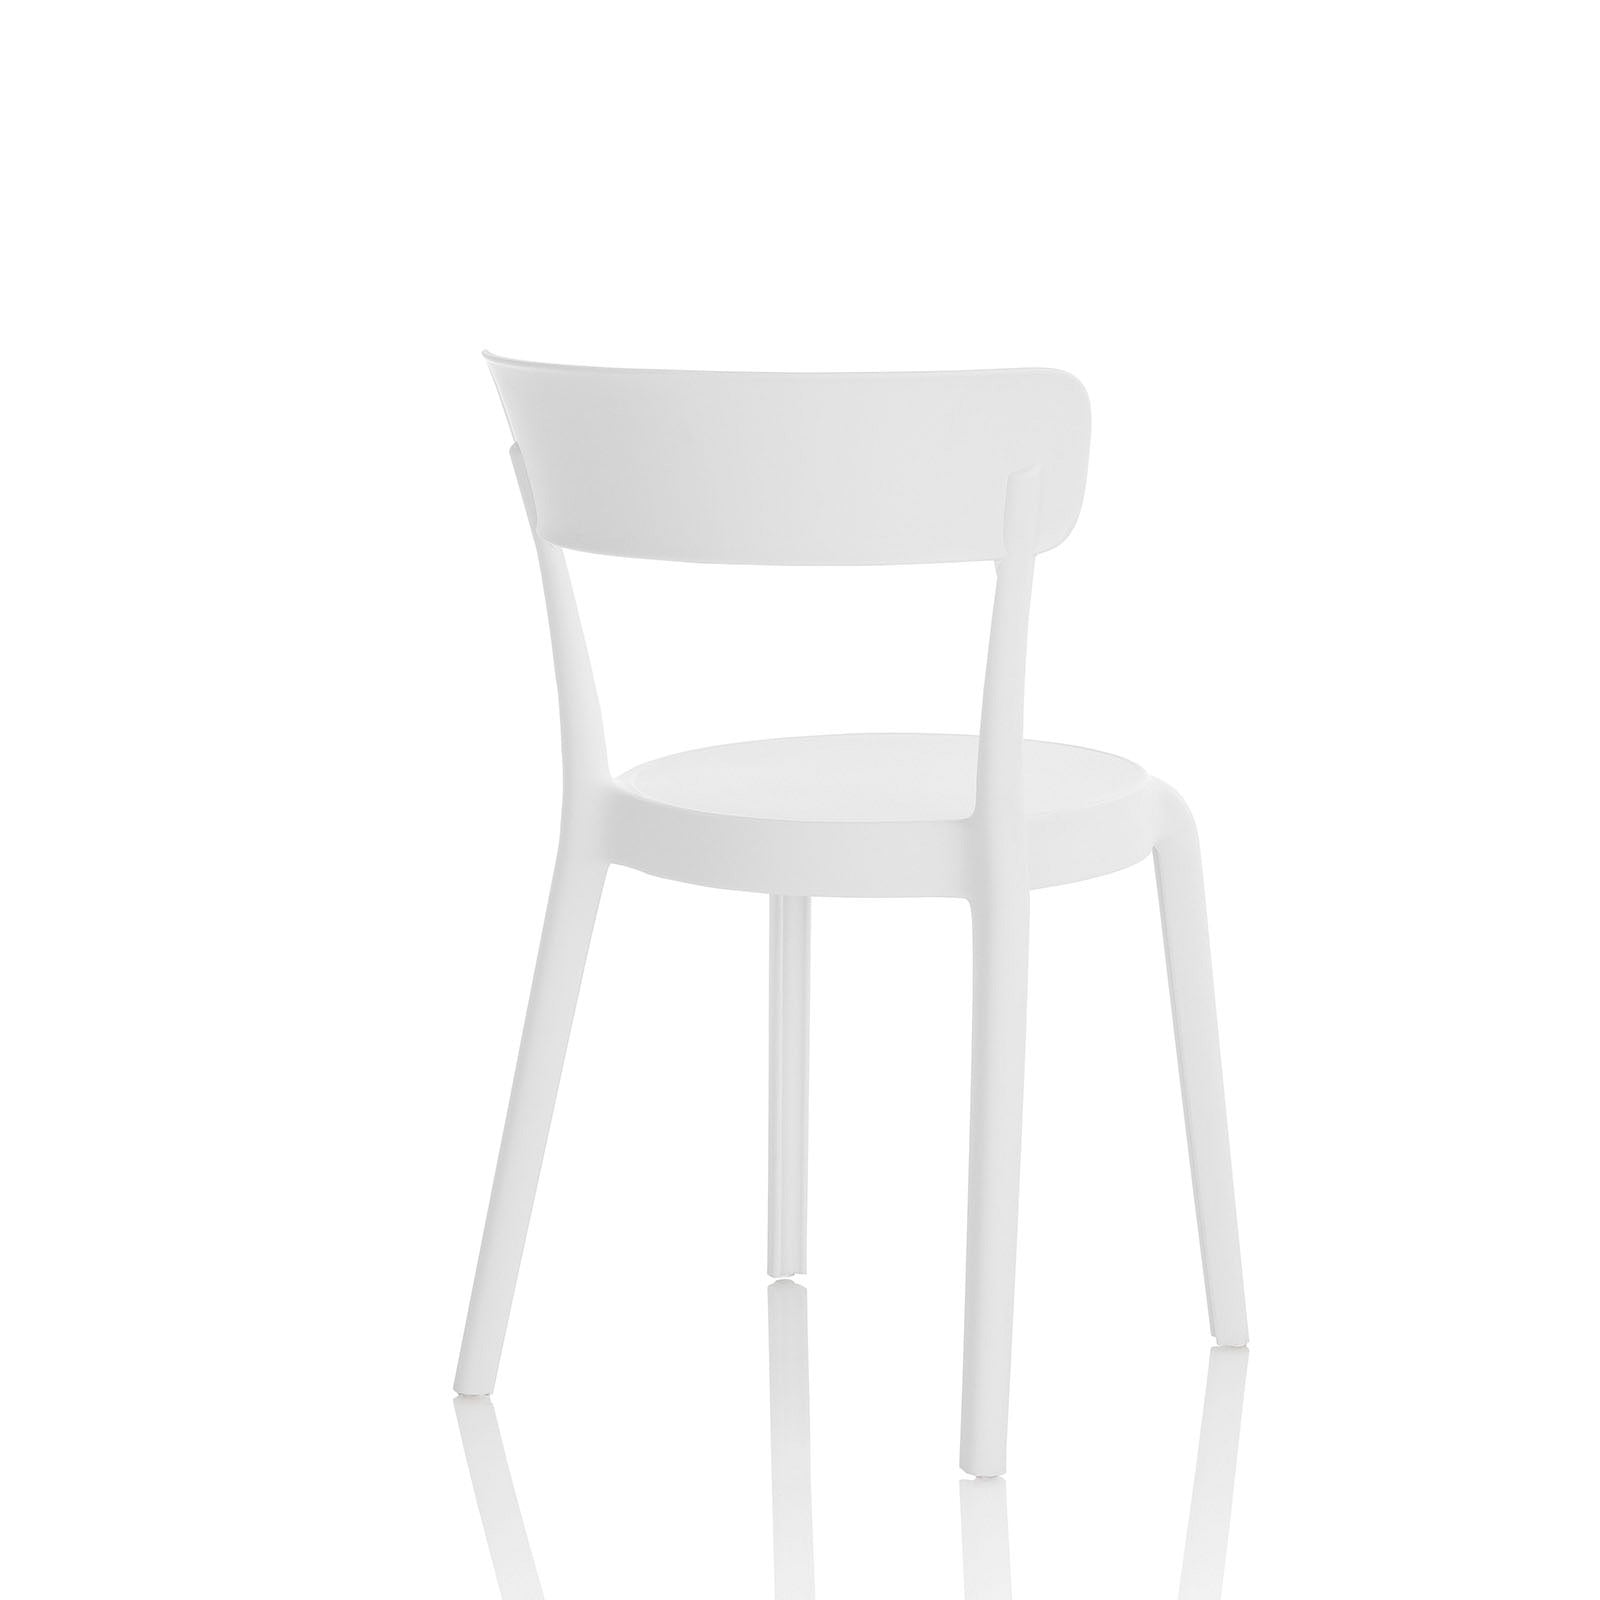 Conjunto de 4 sillas CHERYL para interior y exterior en polipropileno